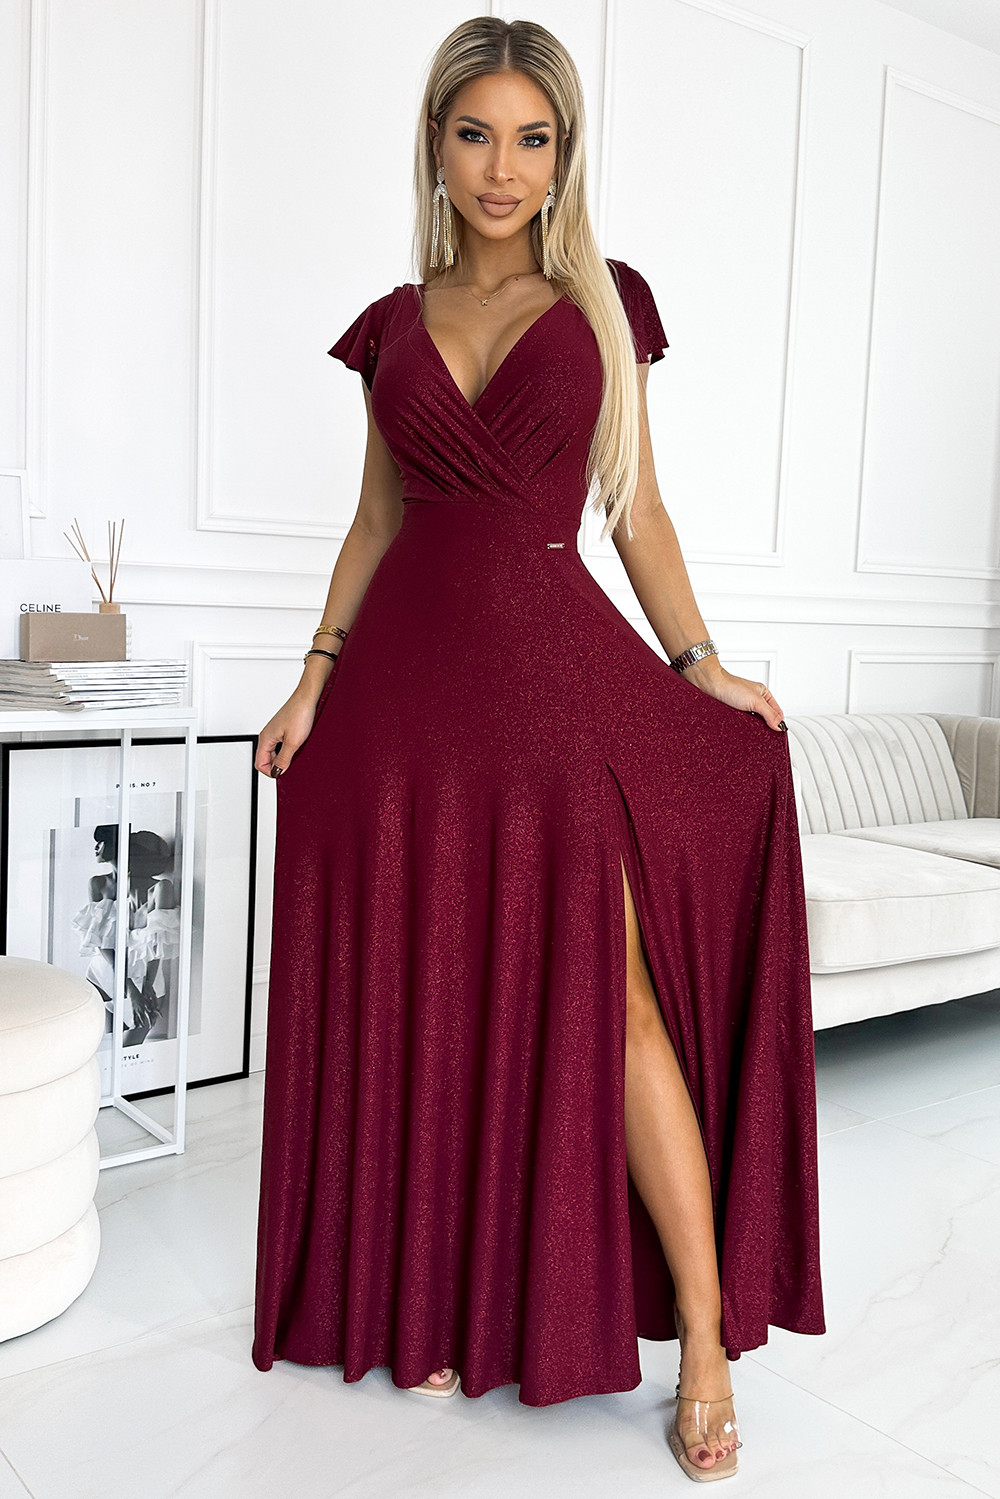 CRYSTAL - Dlouhé lesklé dámské šaty ve vínové bordó barvě s výstřihem 411-8 L